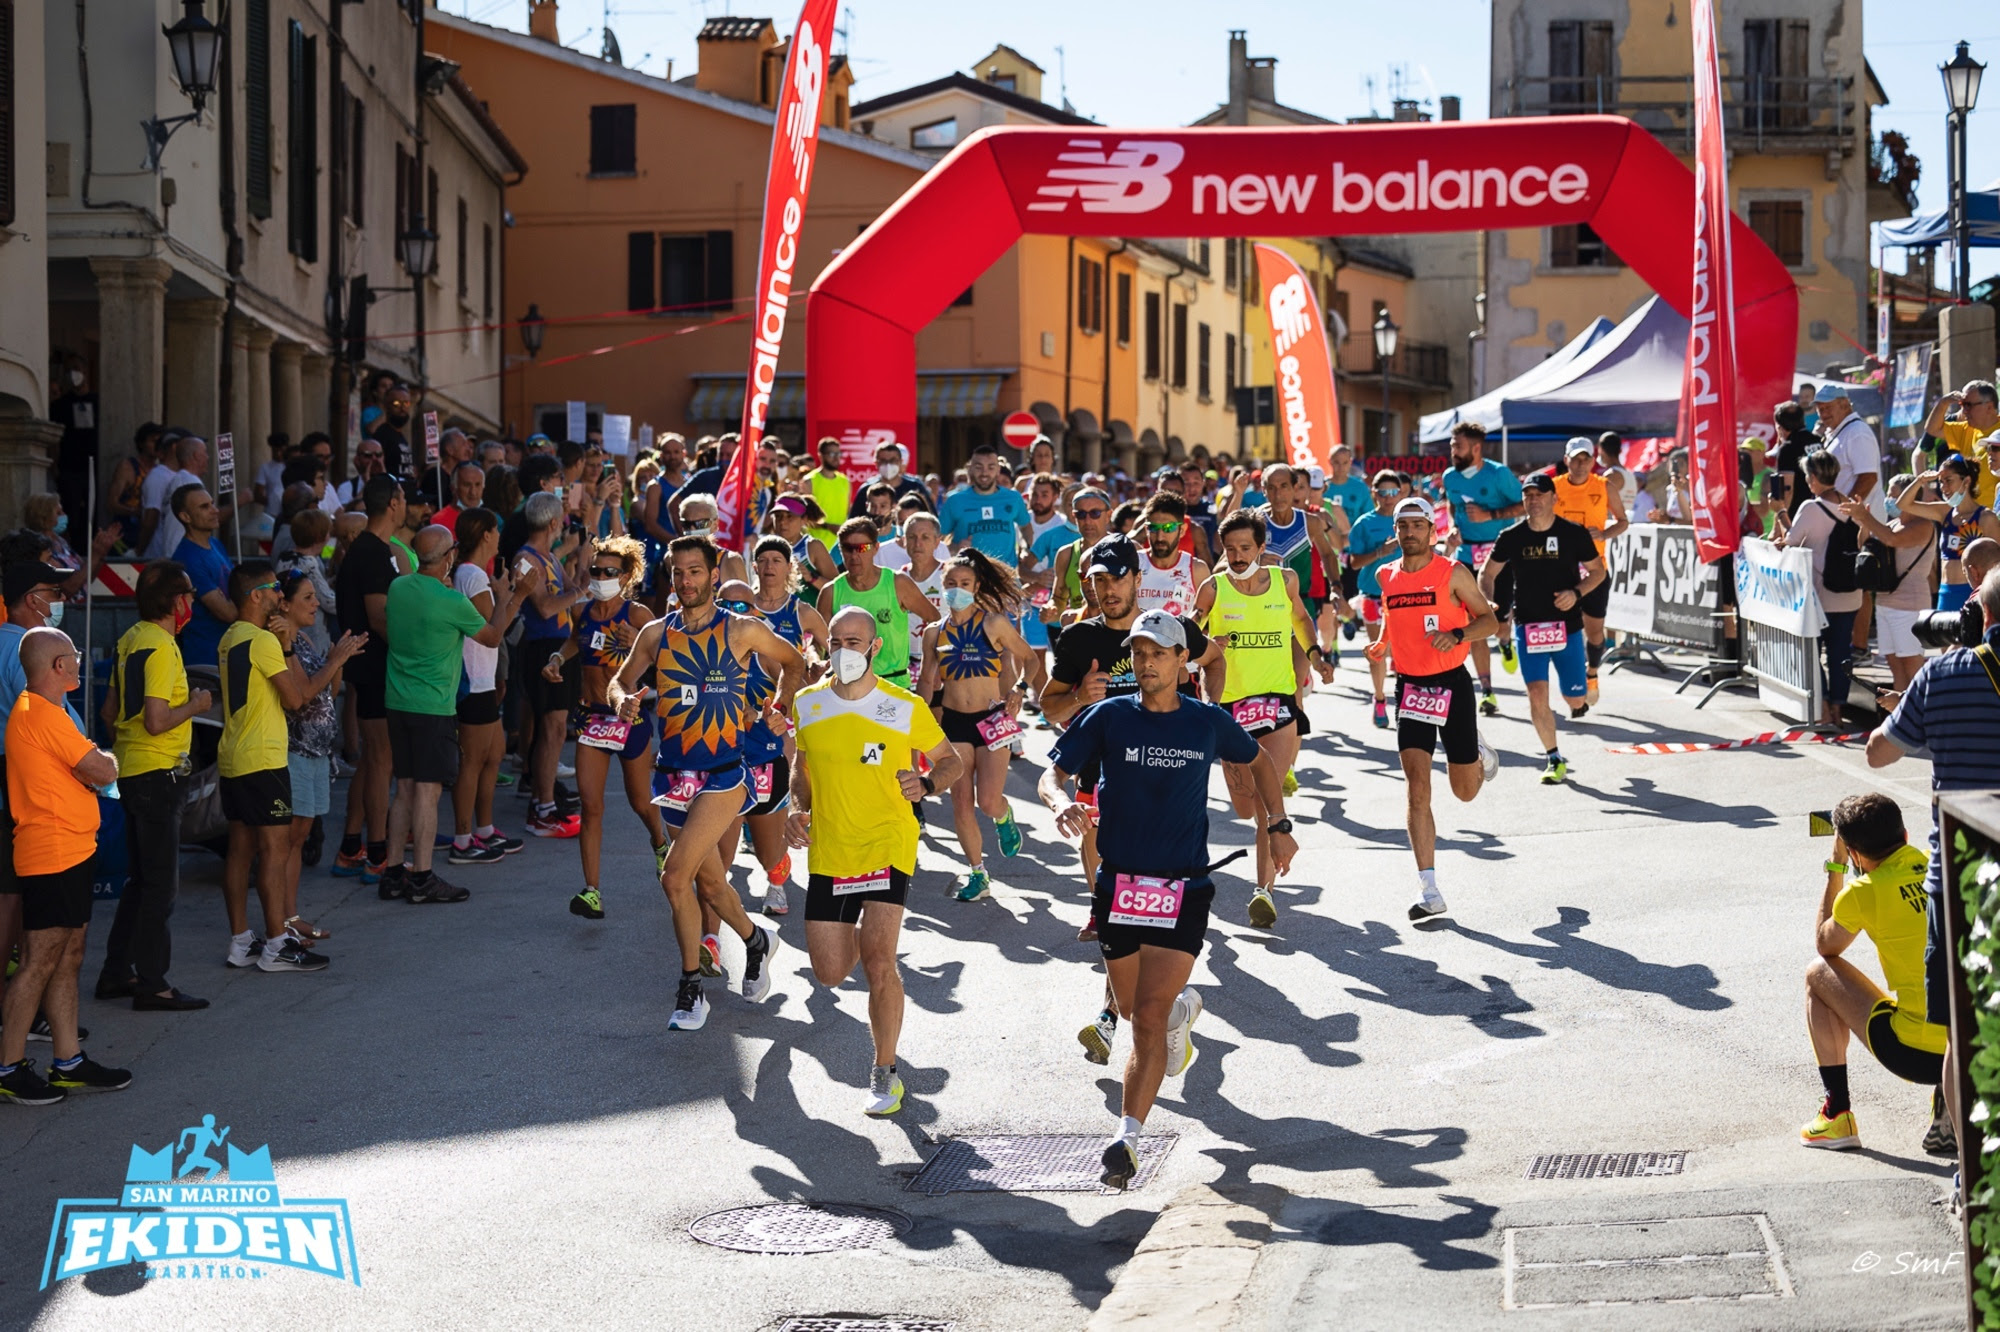 San Marino. Divertimento e spettacolo assicurati alla San Marino Ekiden Marathon e alla San Marino Marathon 2022